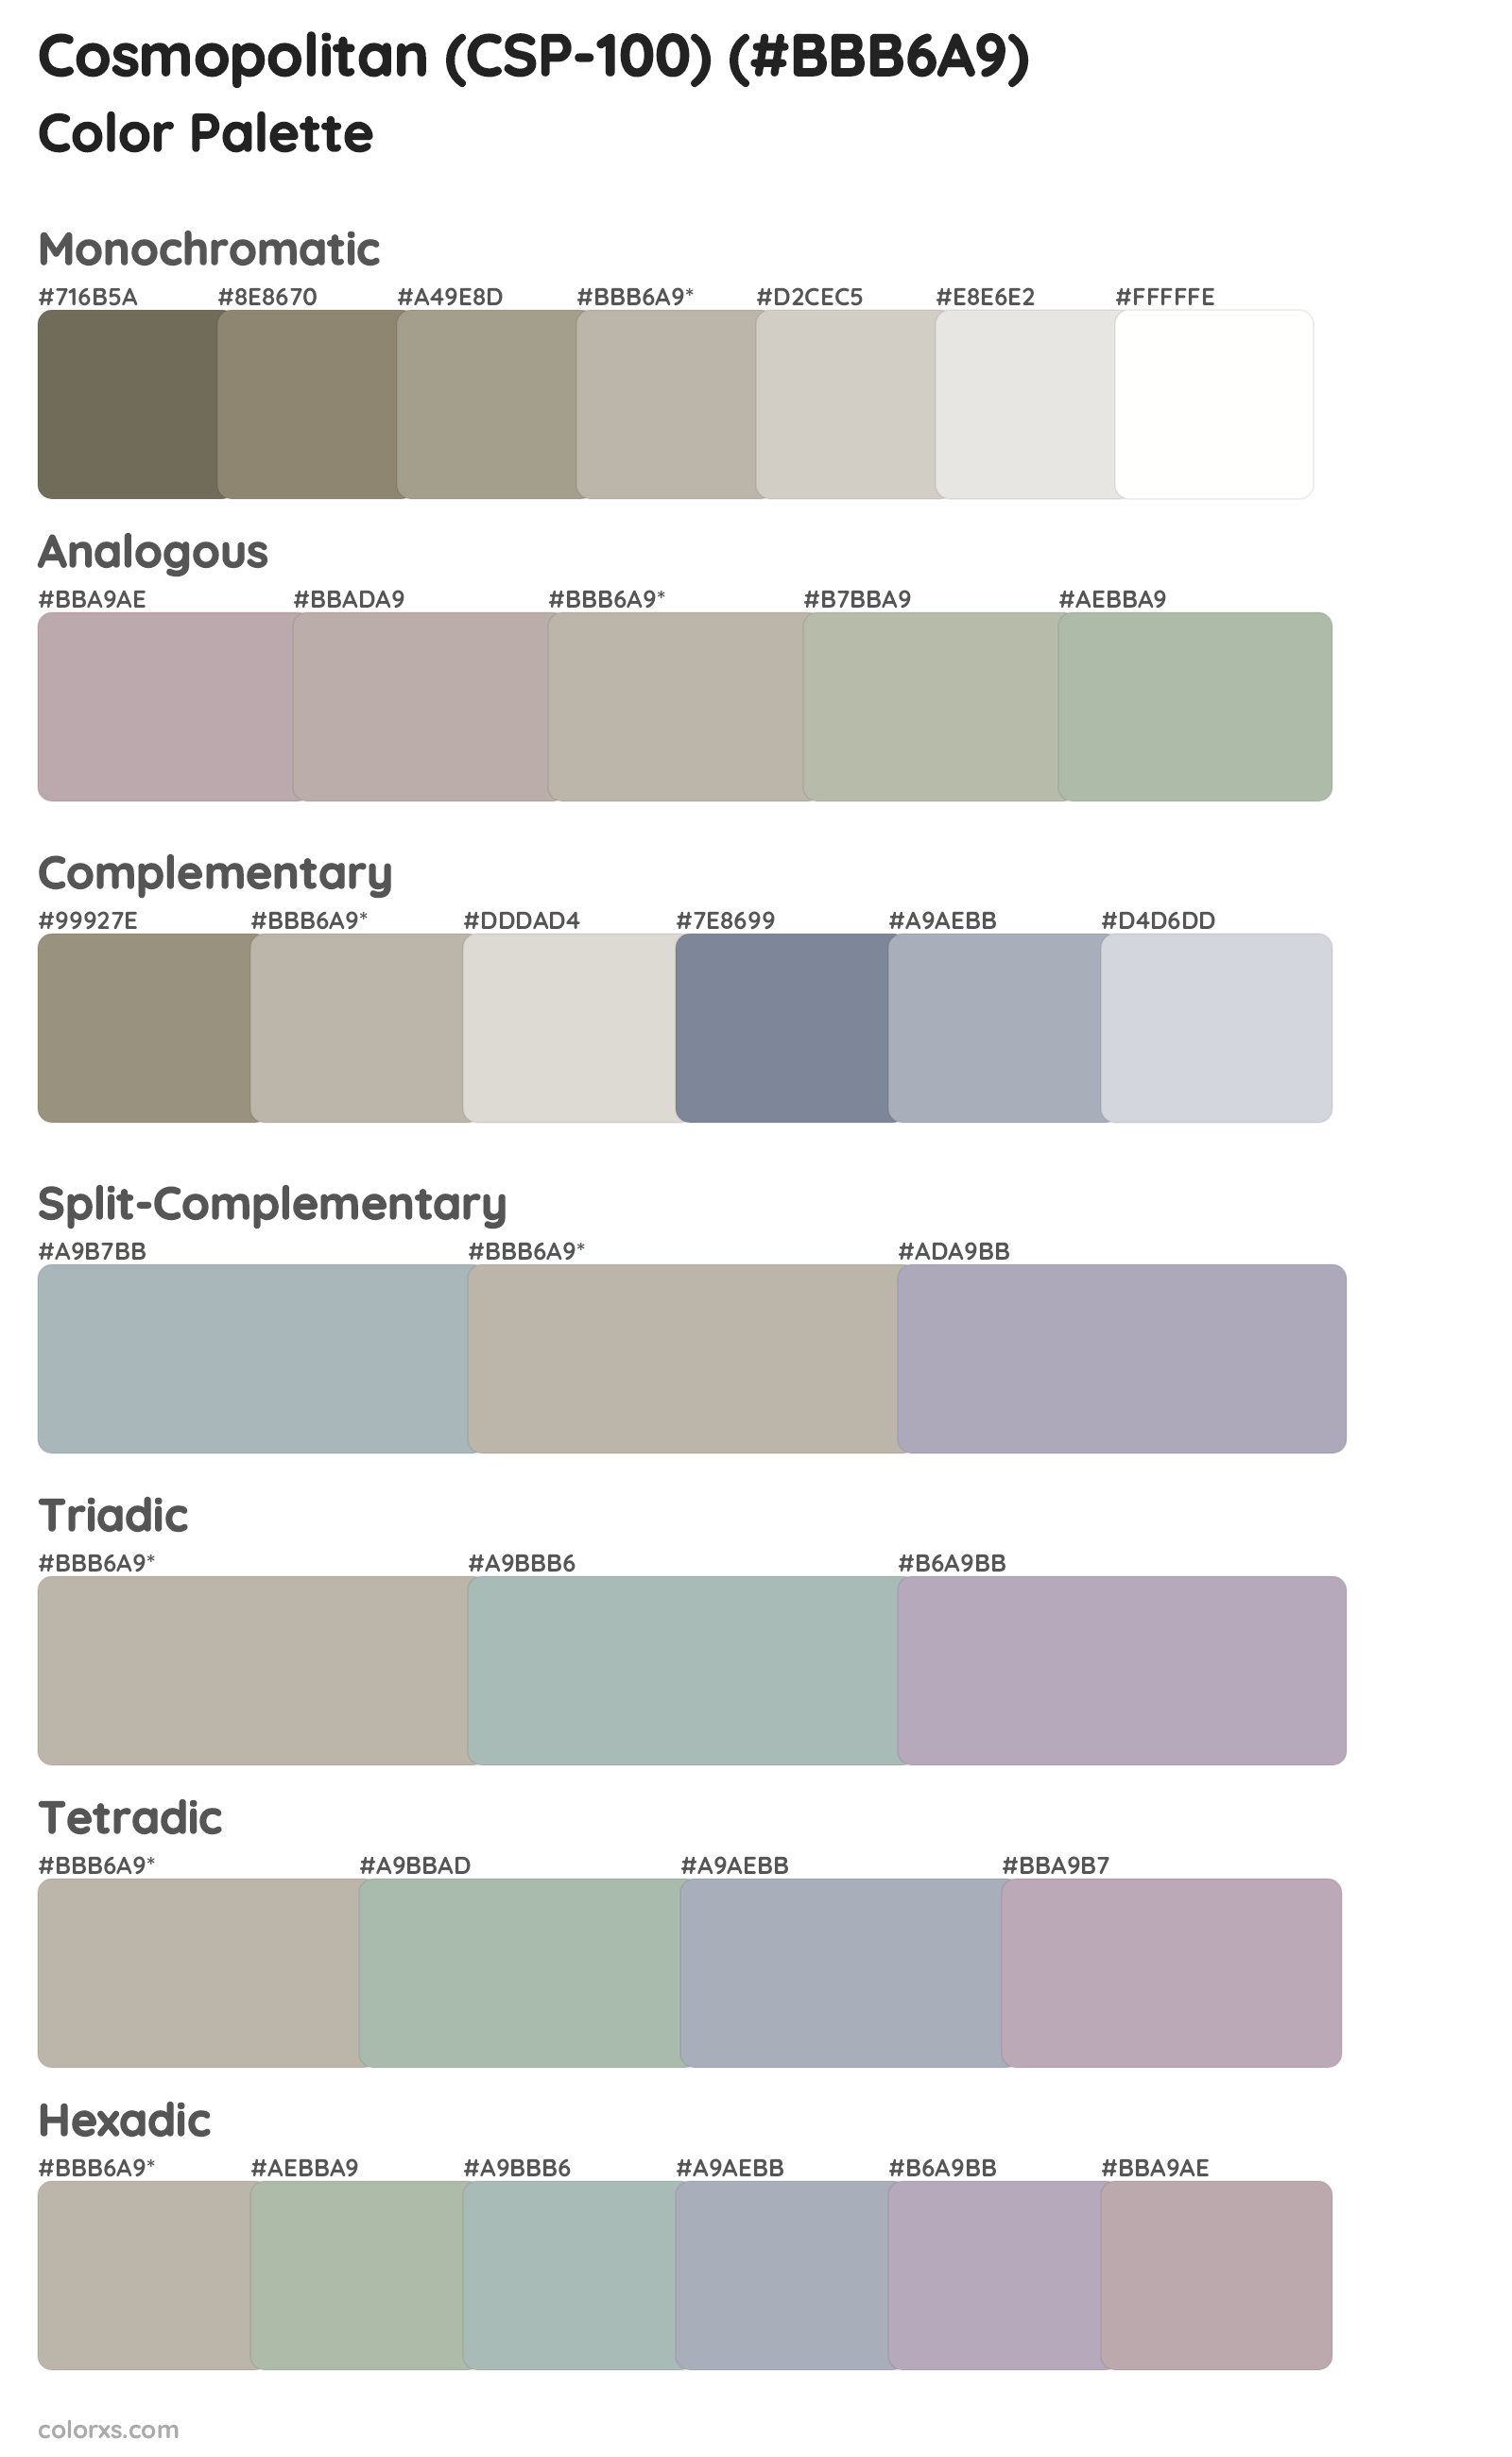 Cosmopolitan (CSP-100) Color Scheme Palettes